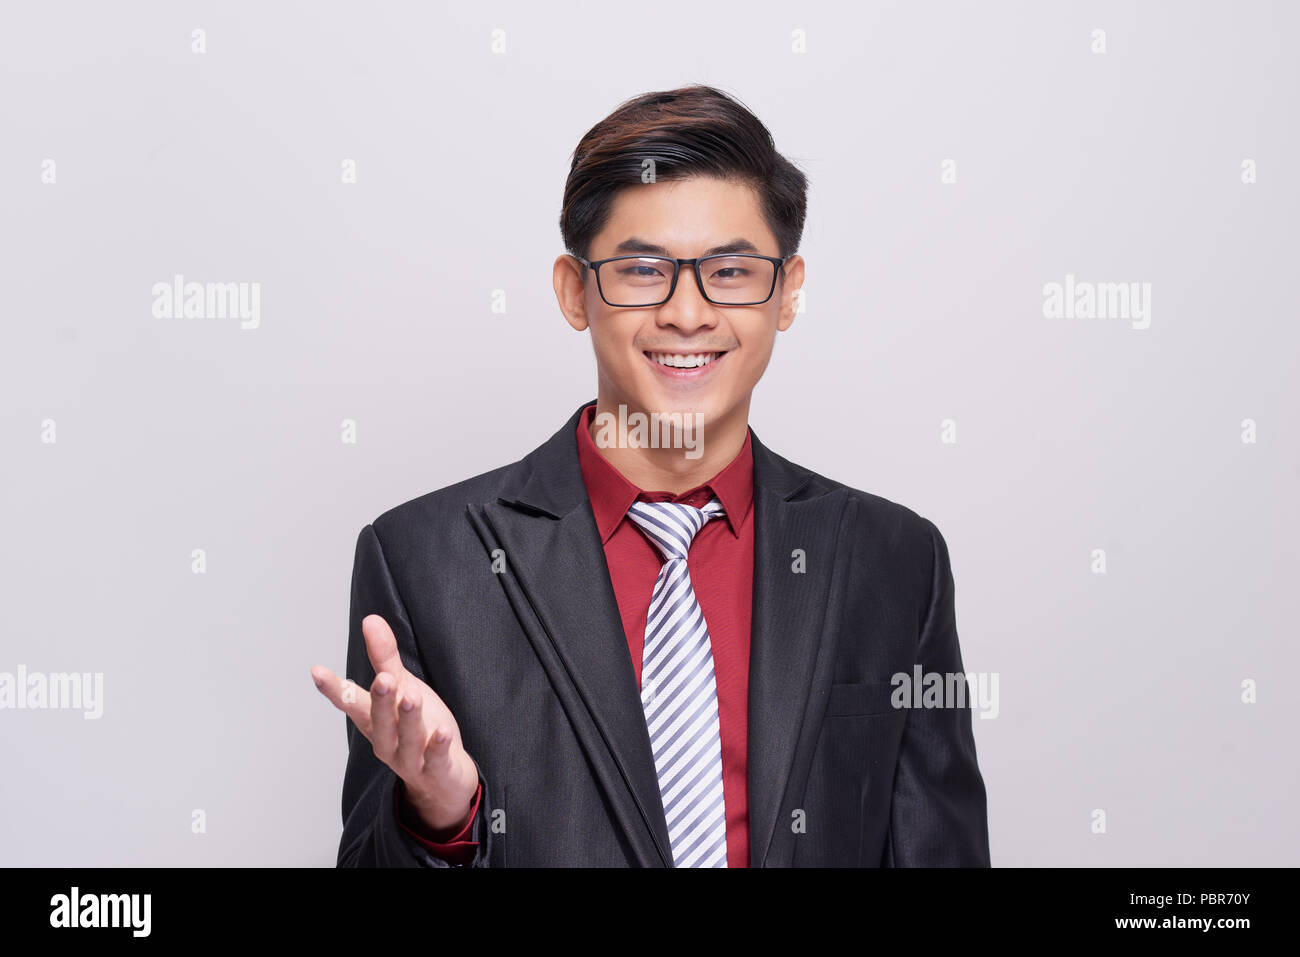 Schön und gut gekleidete Geschäftsmann im Anzug, Krawatte und Weste, vor einem weißen Hintergrund in Richtung Kamera lächelnd stehen. Stockfoto